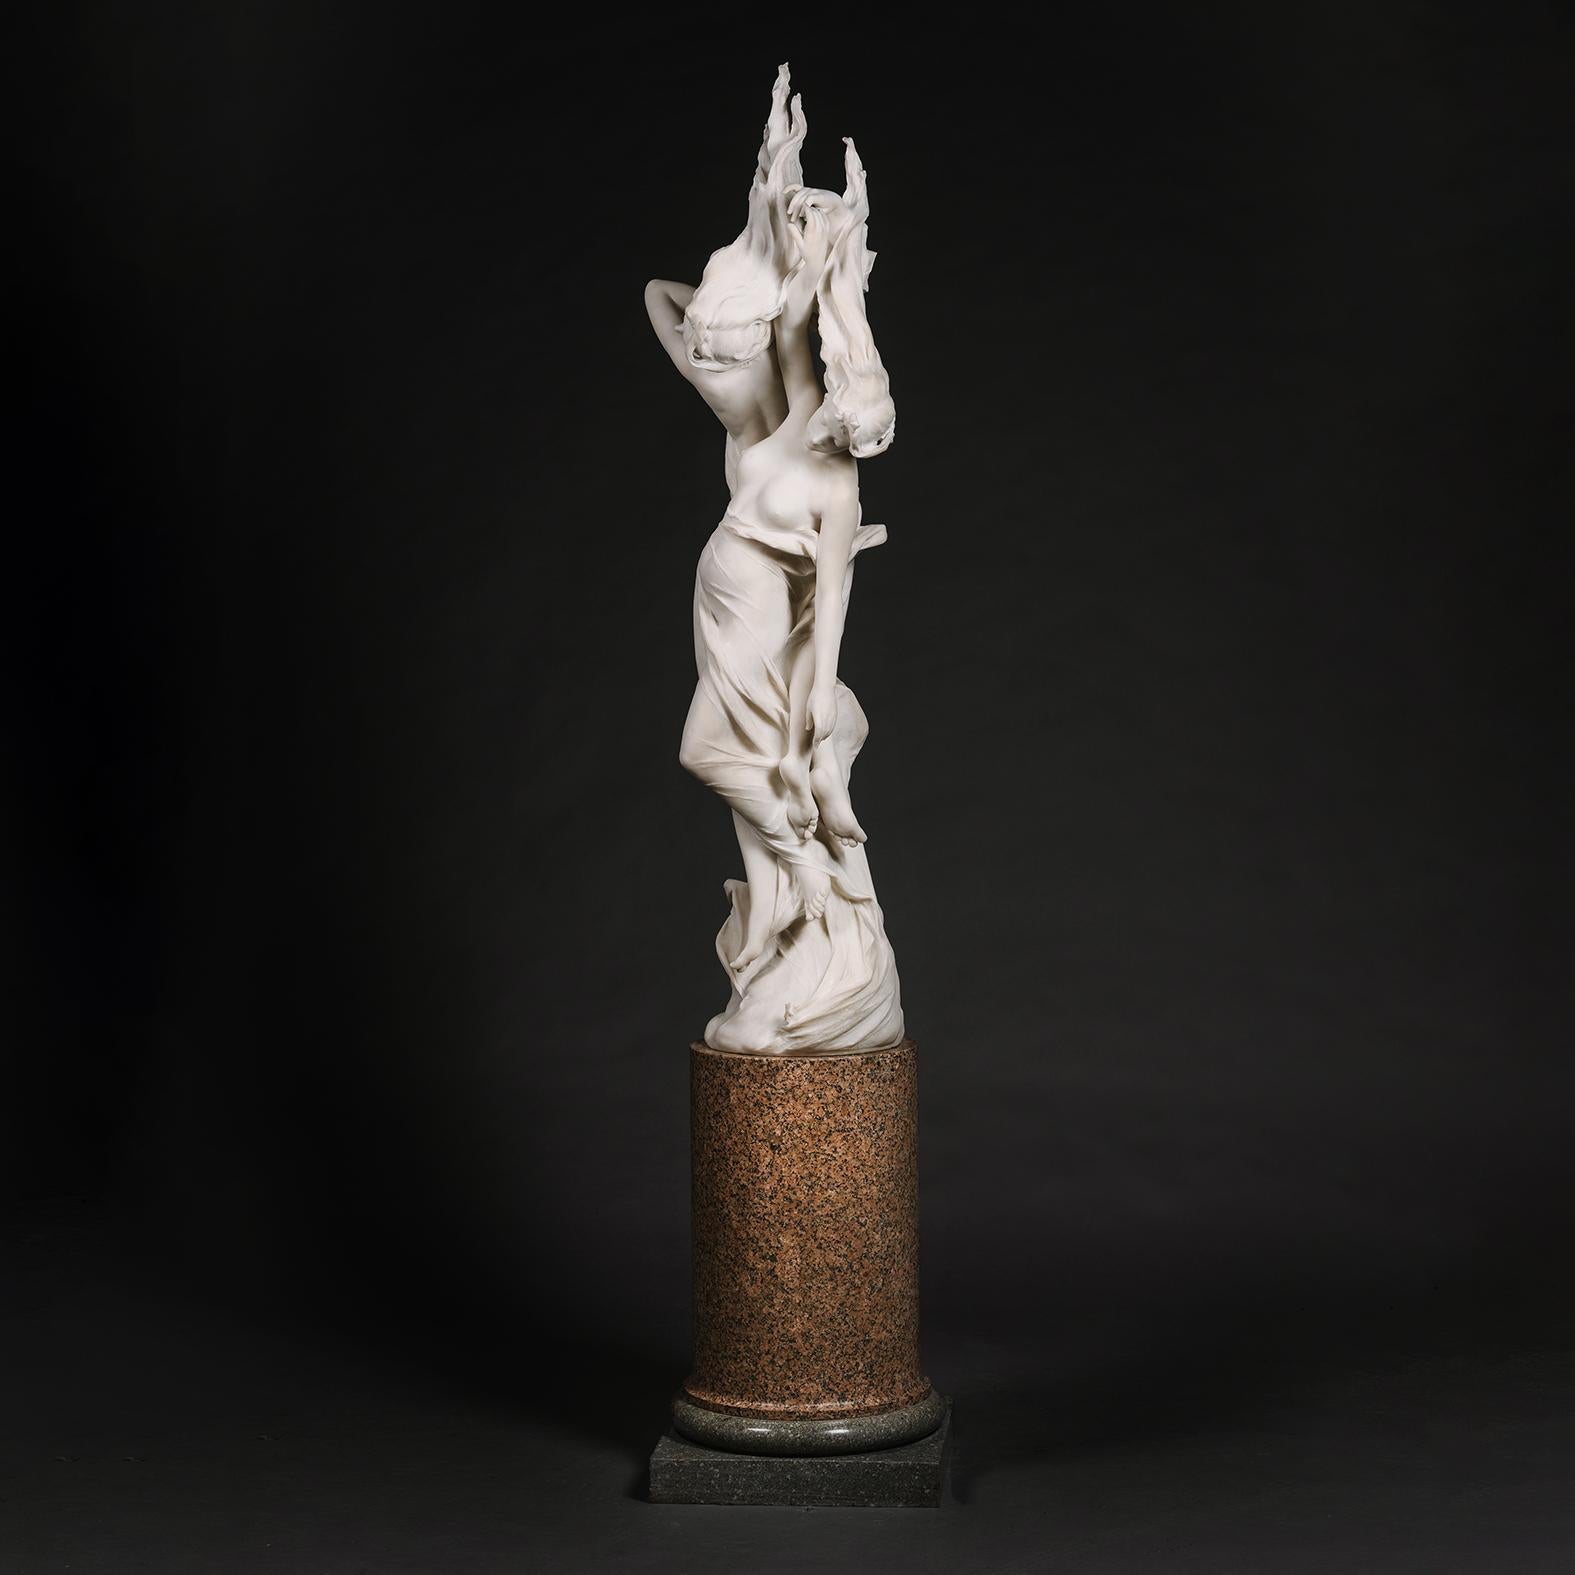 Exceptionnel groupe figuratif en marbre blanc de deux nymphes, intitulé 